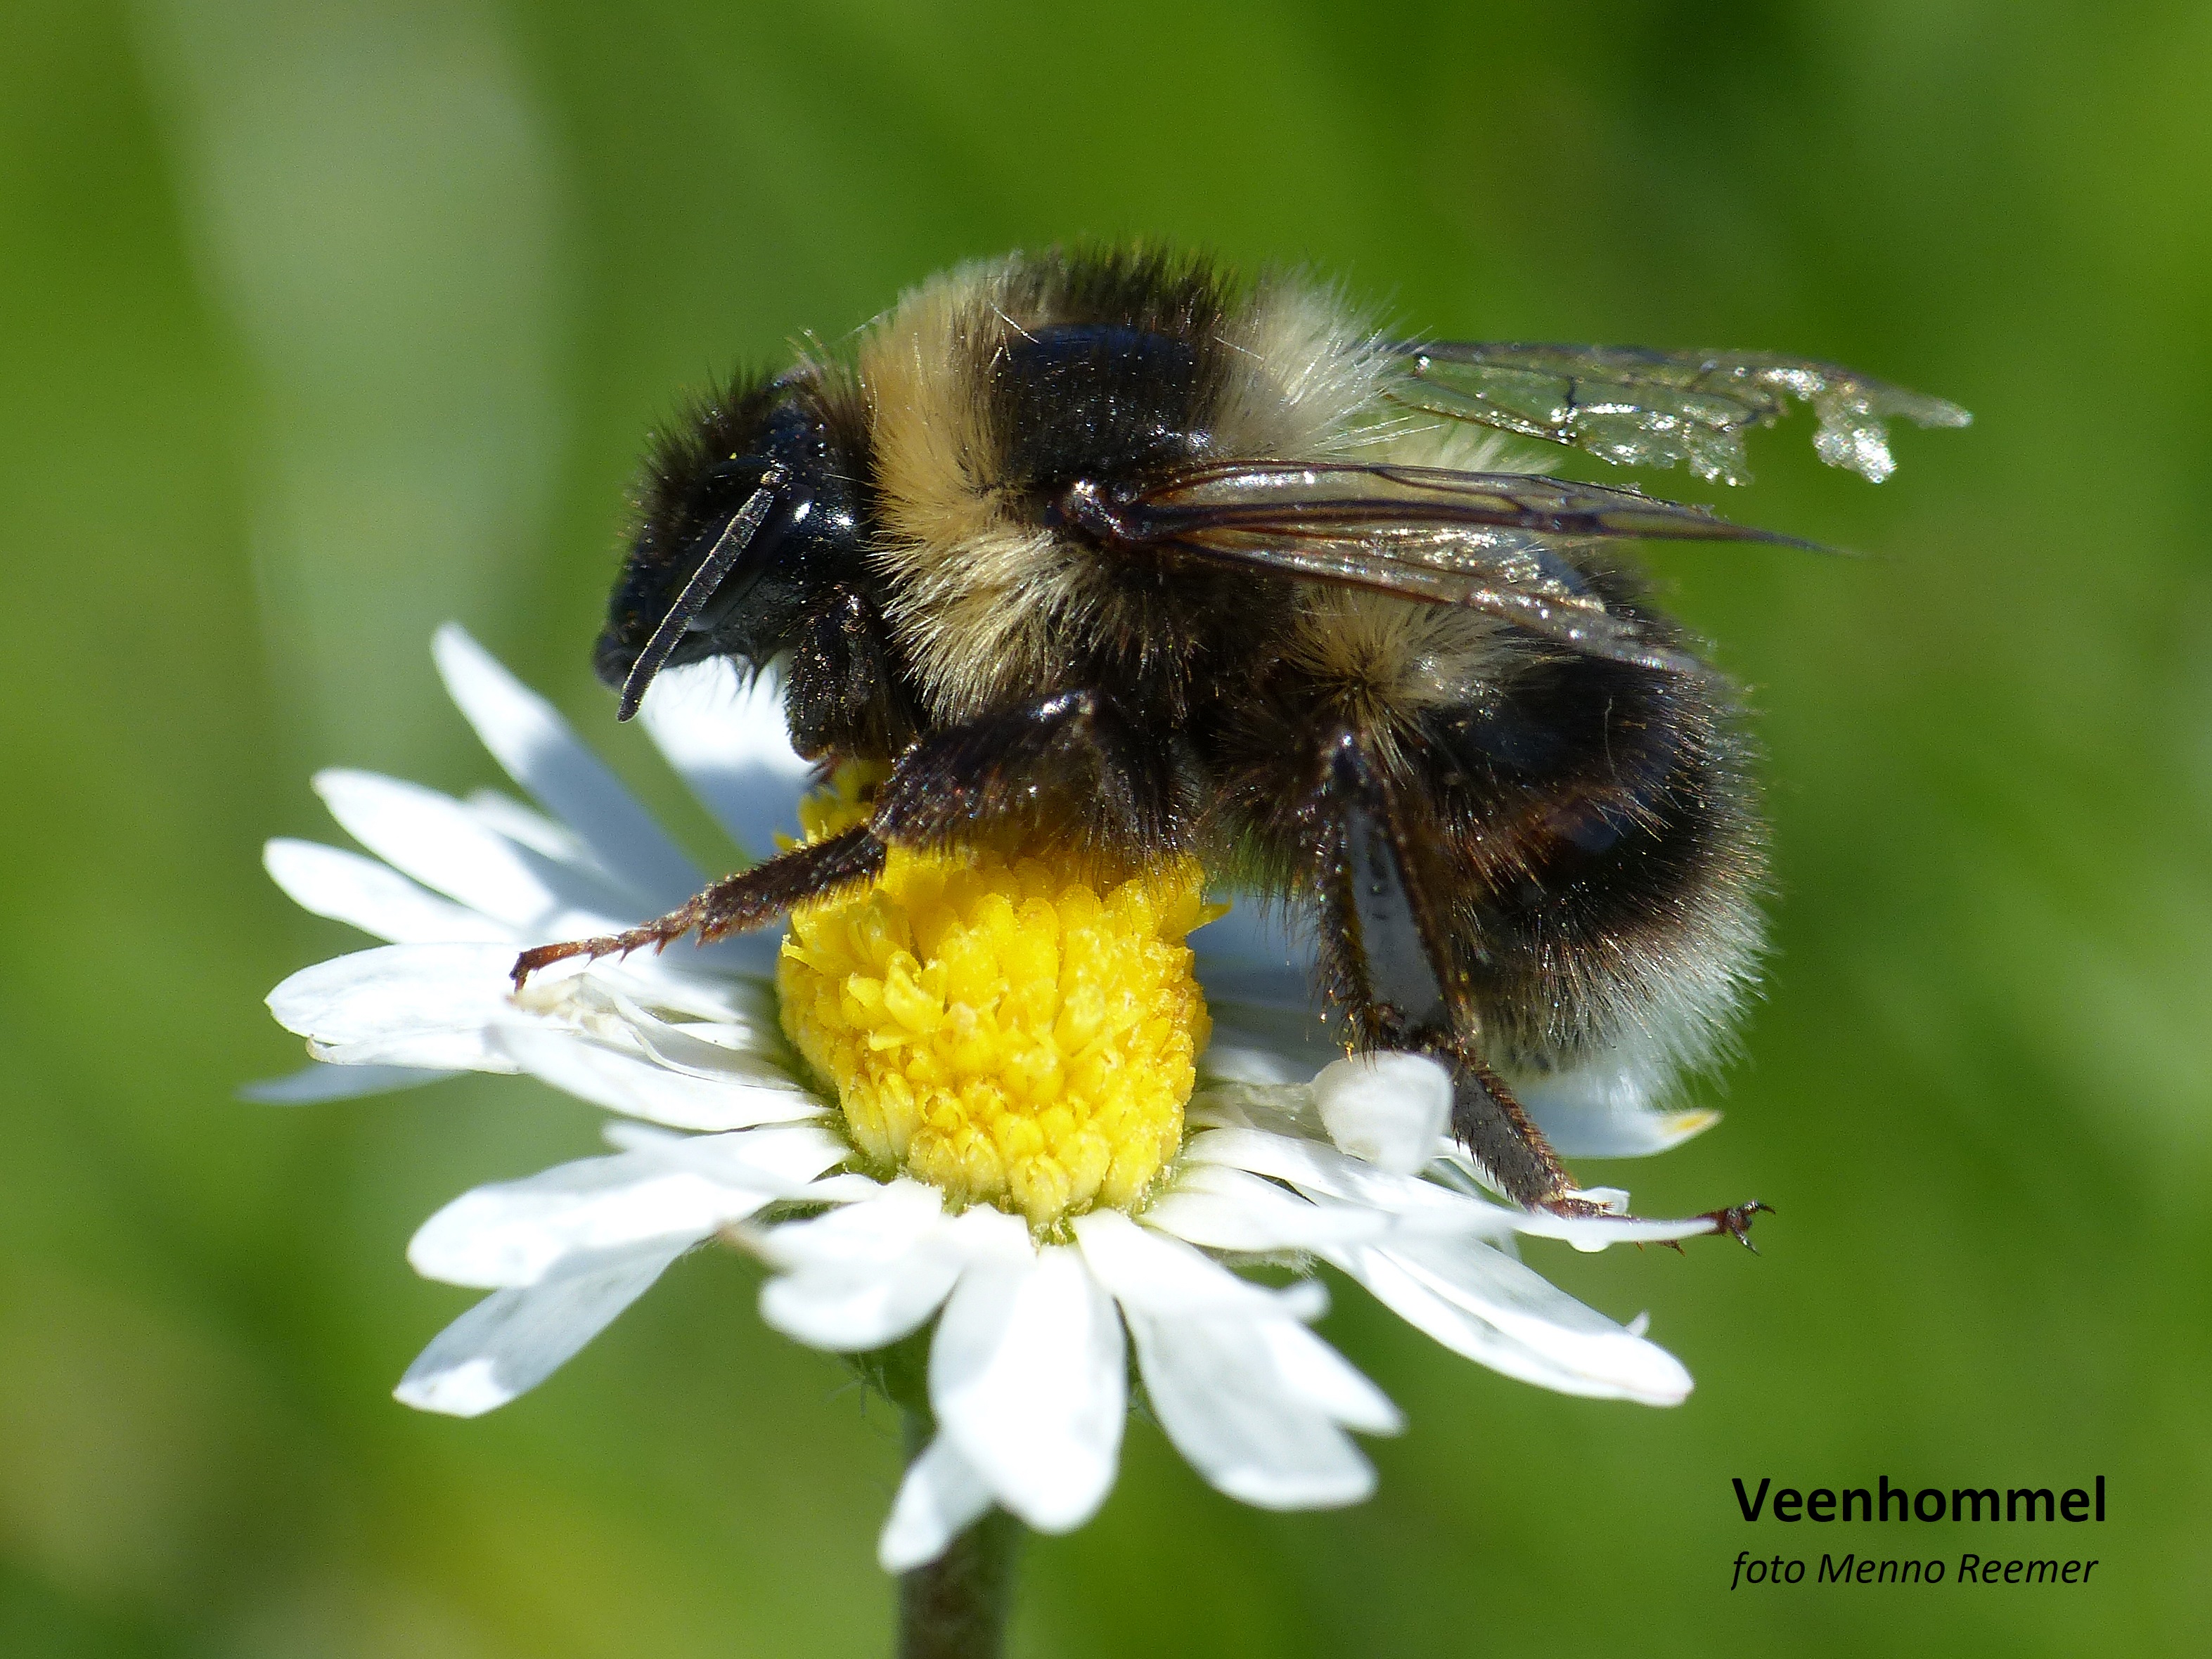 Internationale erkenning: Groene Cirkel Bijenlandschap is een Voluntary Conservation Area